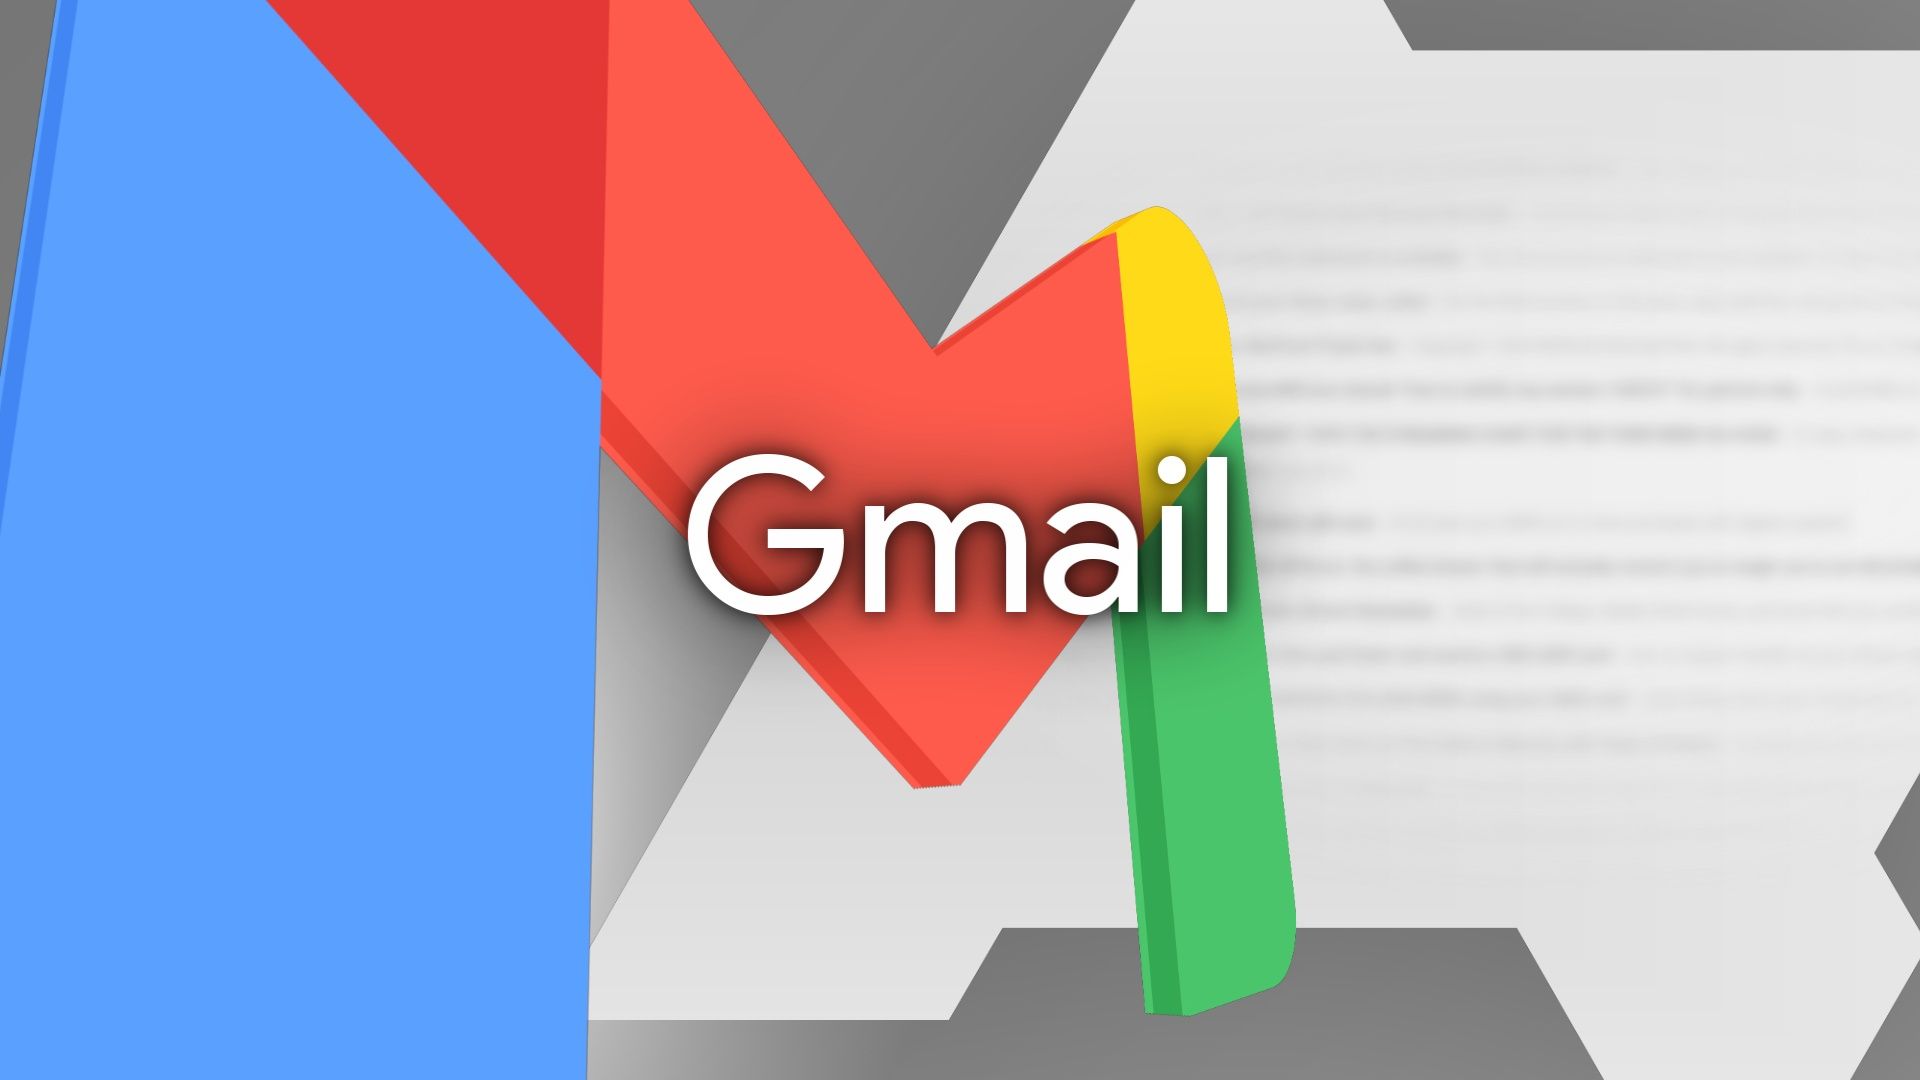 Uma ilustração usando cores primárias com a marca Gmail e o logotipo da Android Police atrás.